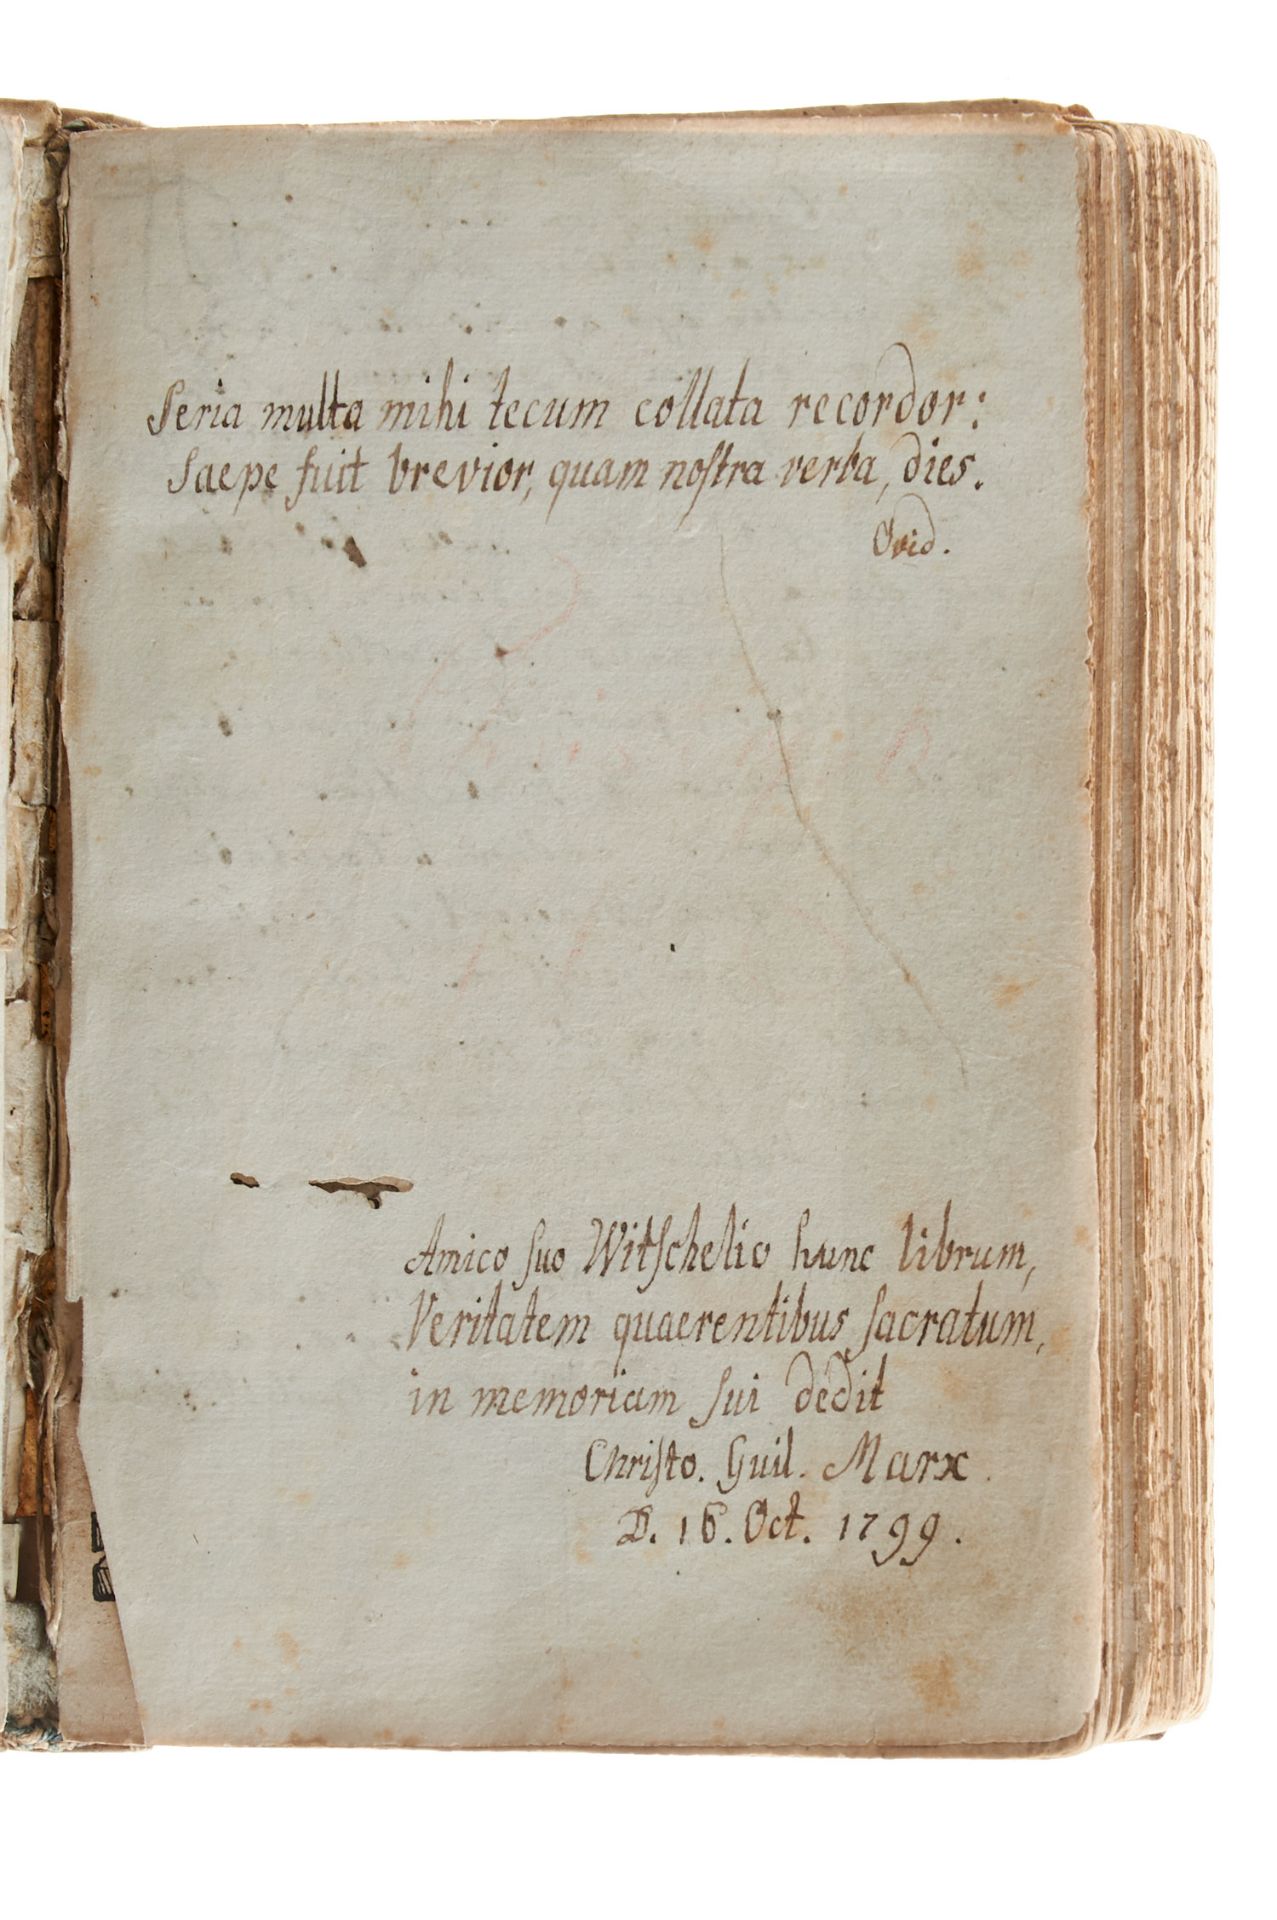 Album amicorum Ein Wittenberger Gelehrtenstammbuch in einem Exemplar von Reusners "Icones" 1587